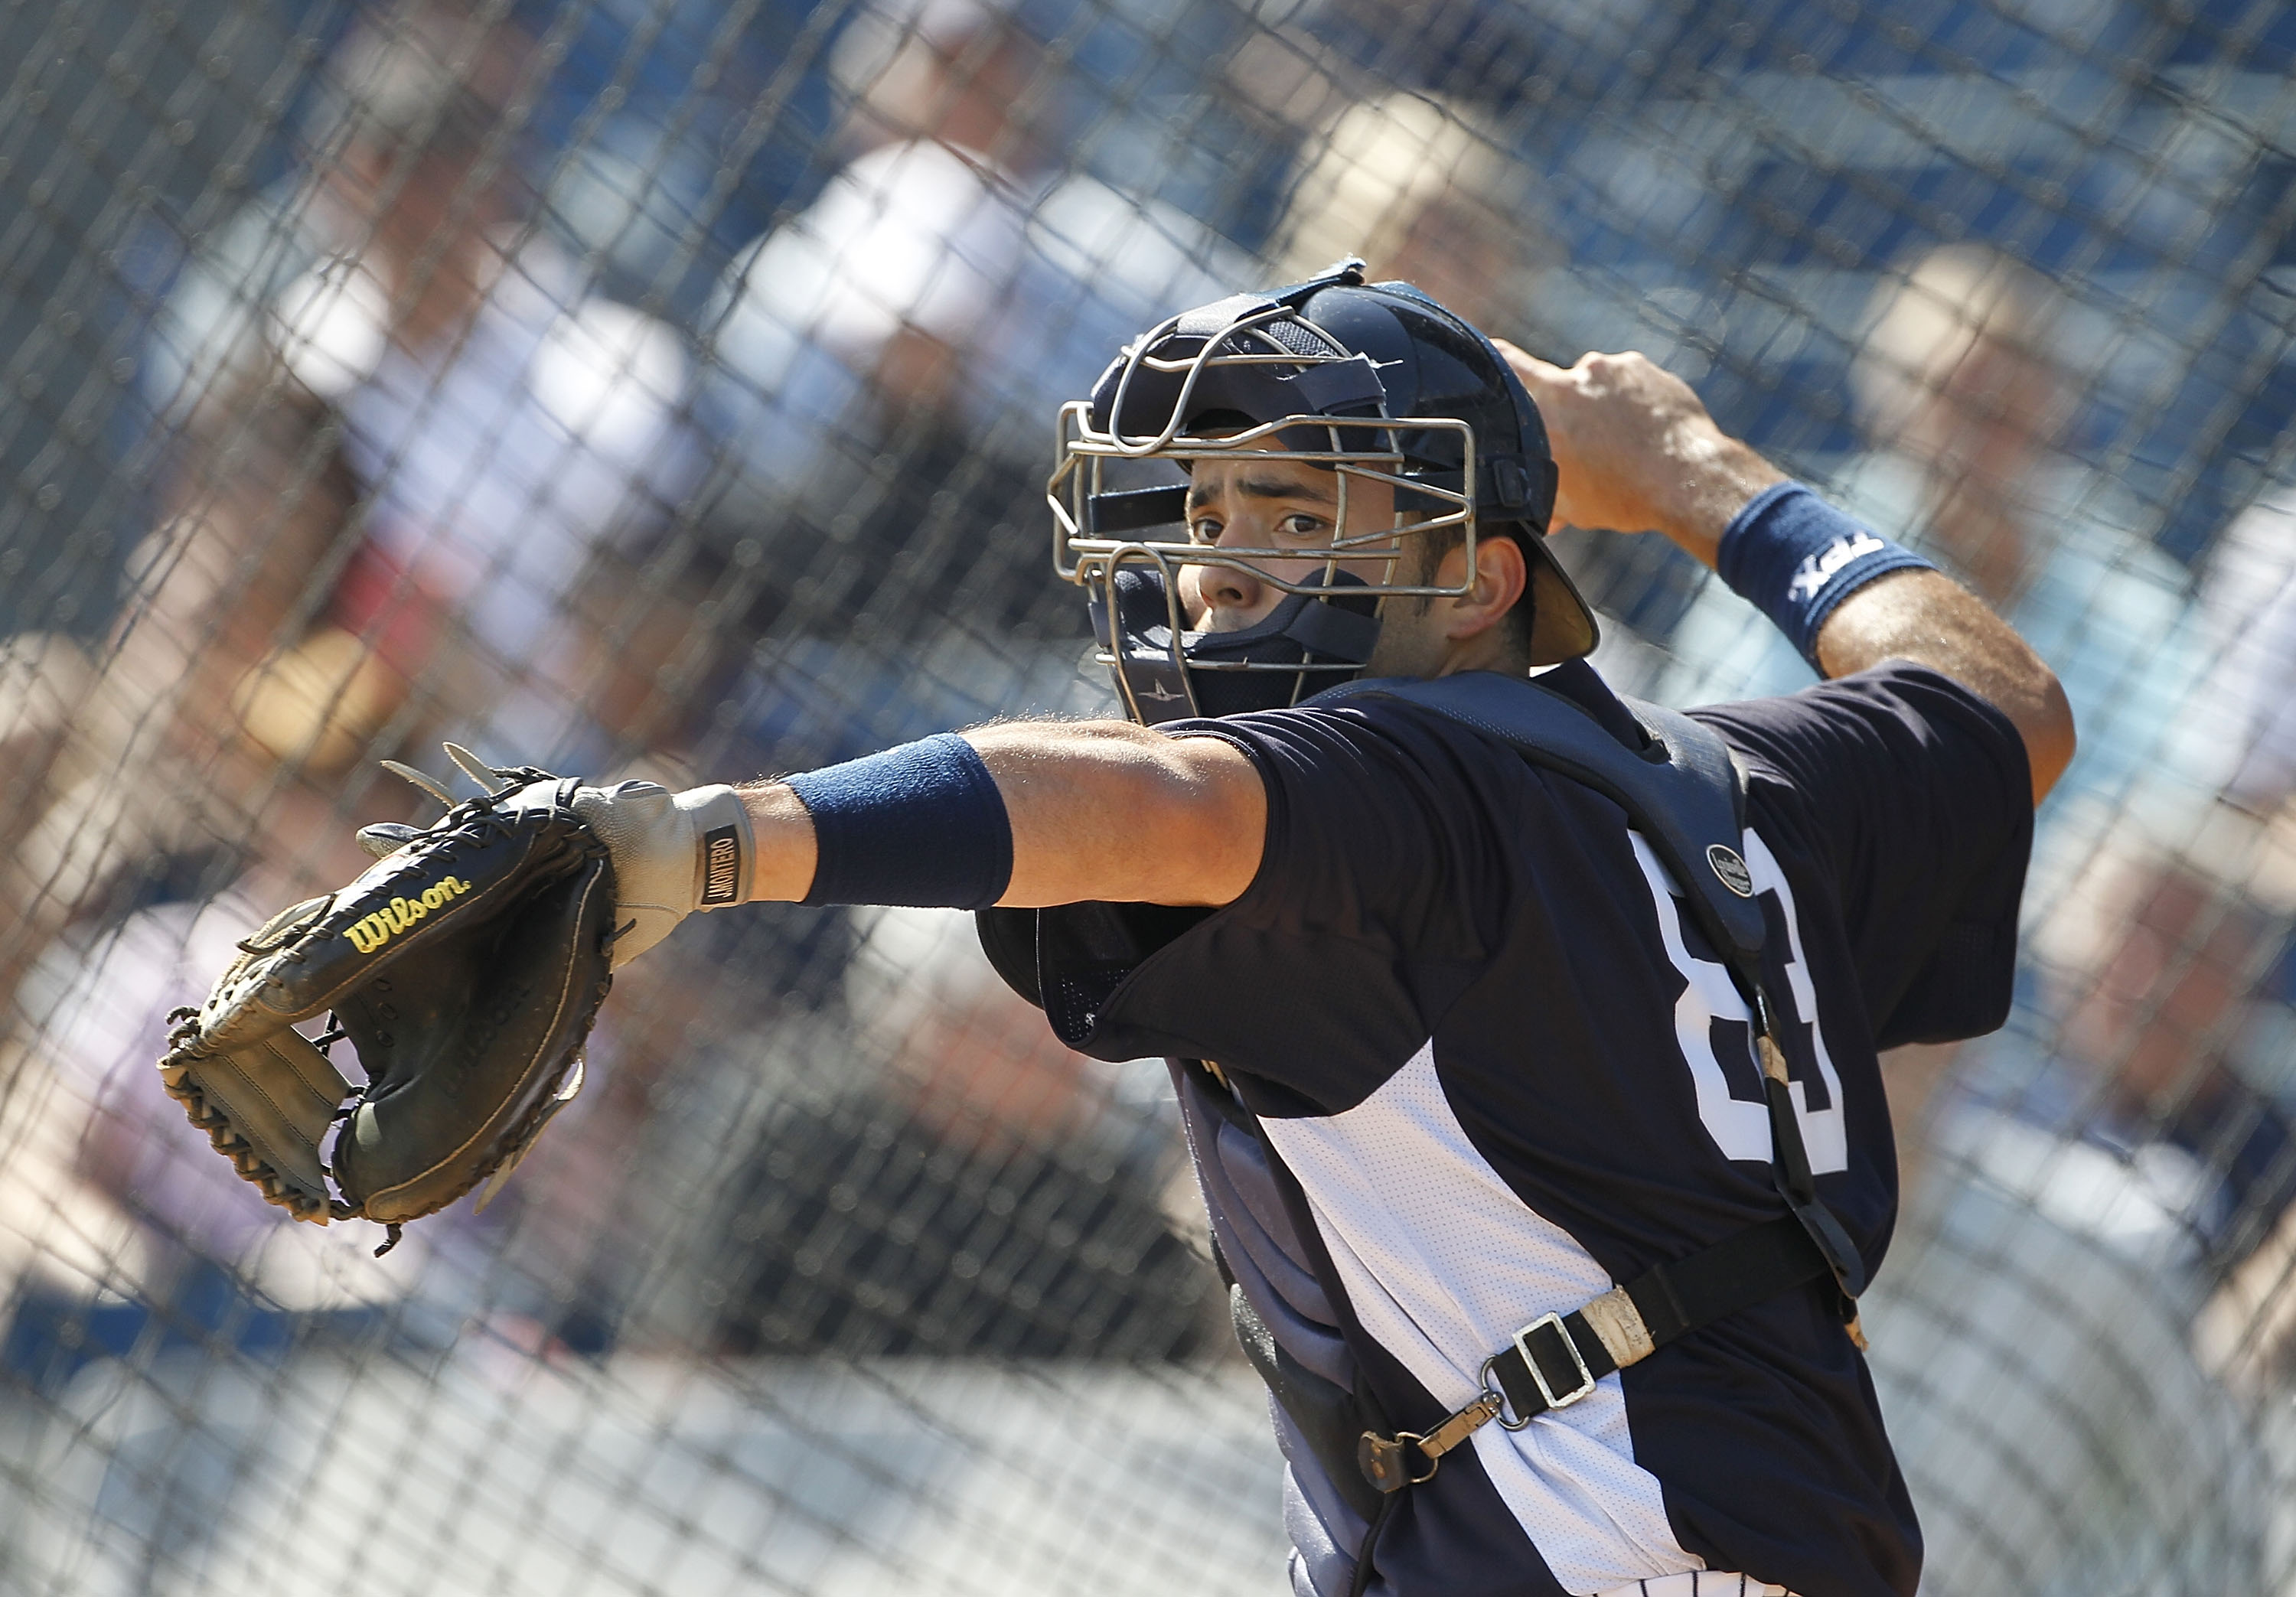 UNC Baseball: Matt Harvey transitions to bullpen role